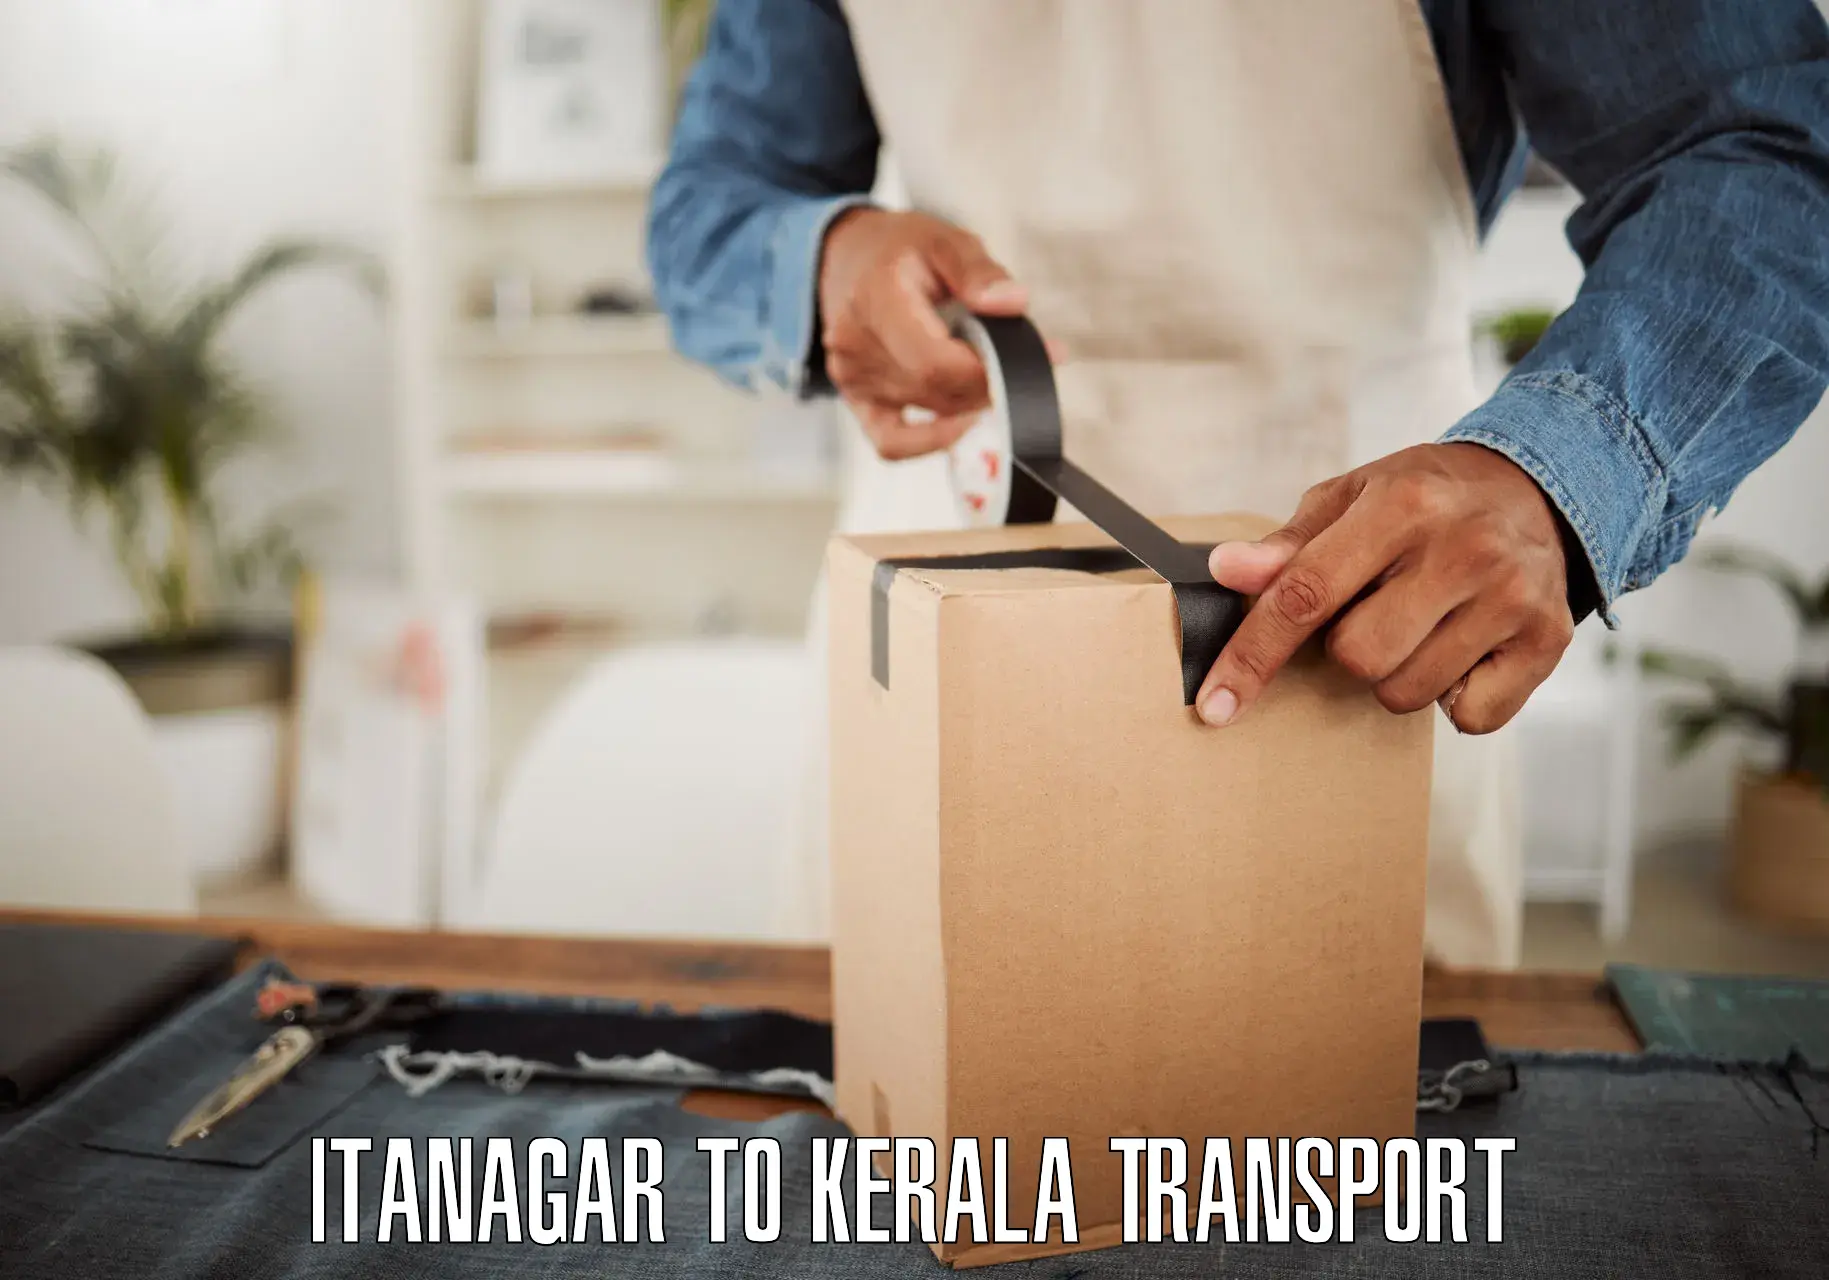 Transport in sharing Itanagar to Pangodu